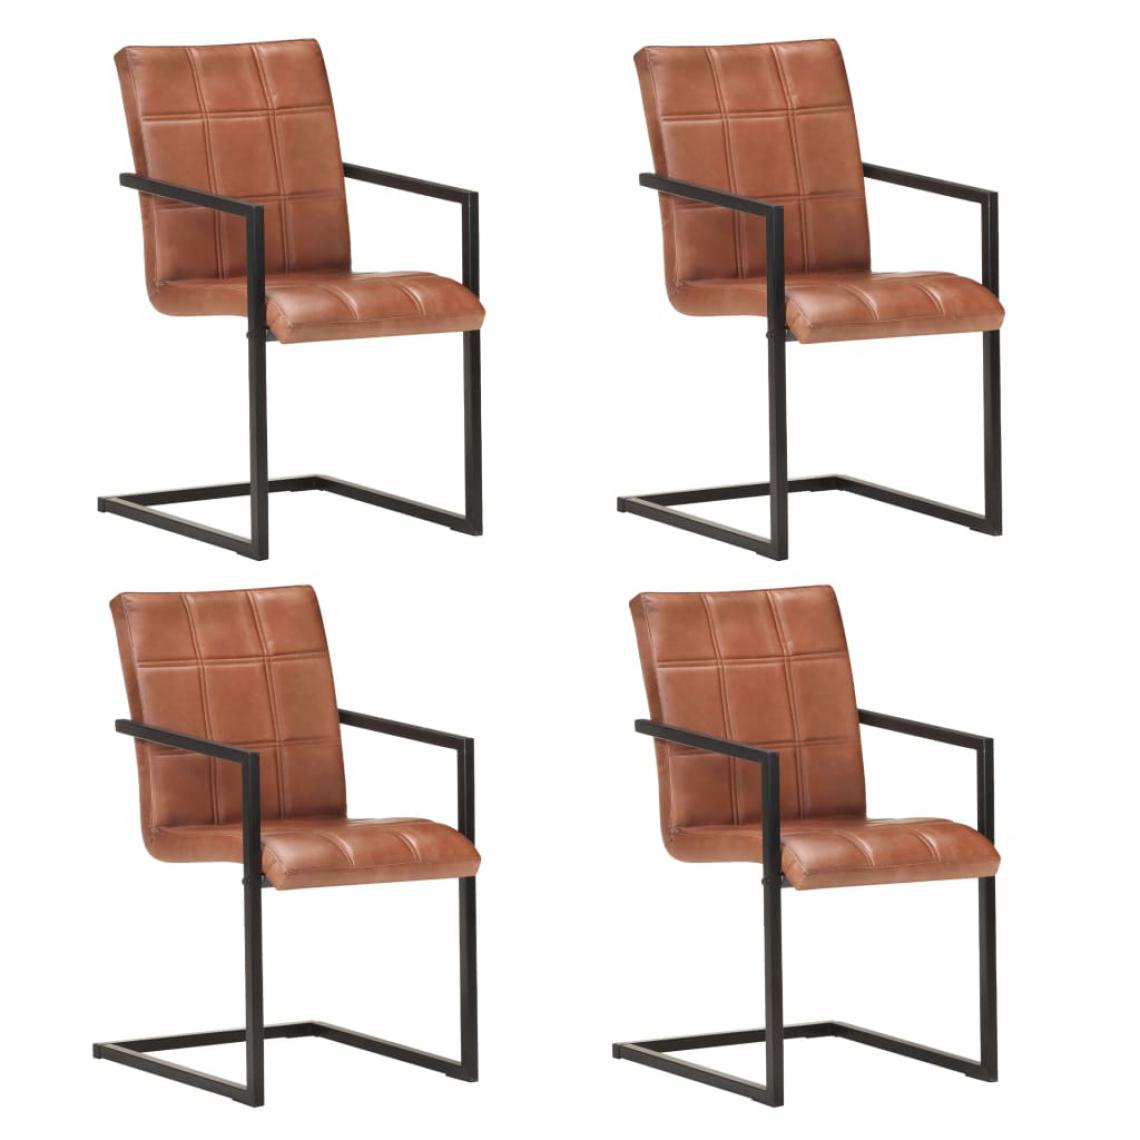 Icaverne - Stylé Fauteuils et chaises collection Tokyo Chaises de salle à manger cantilever 4pcs Marron Cuir véritable - Chaises